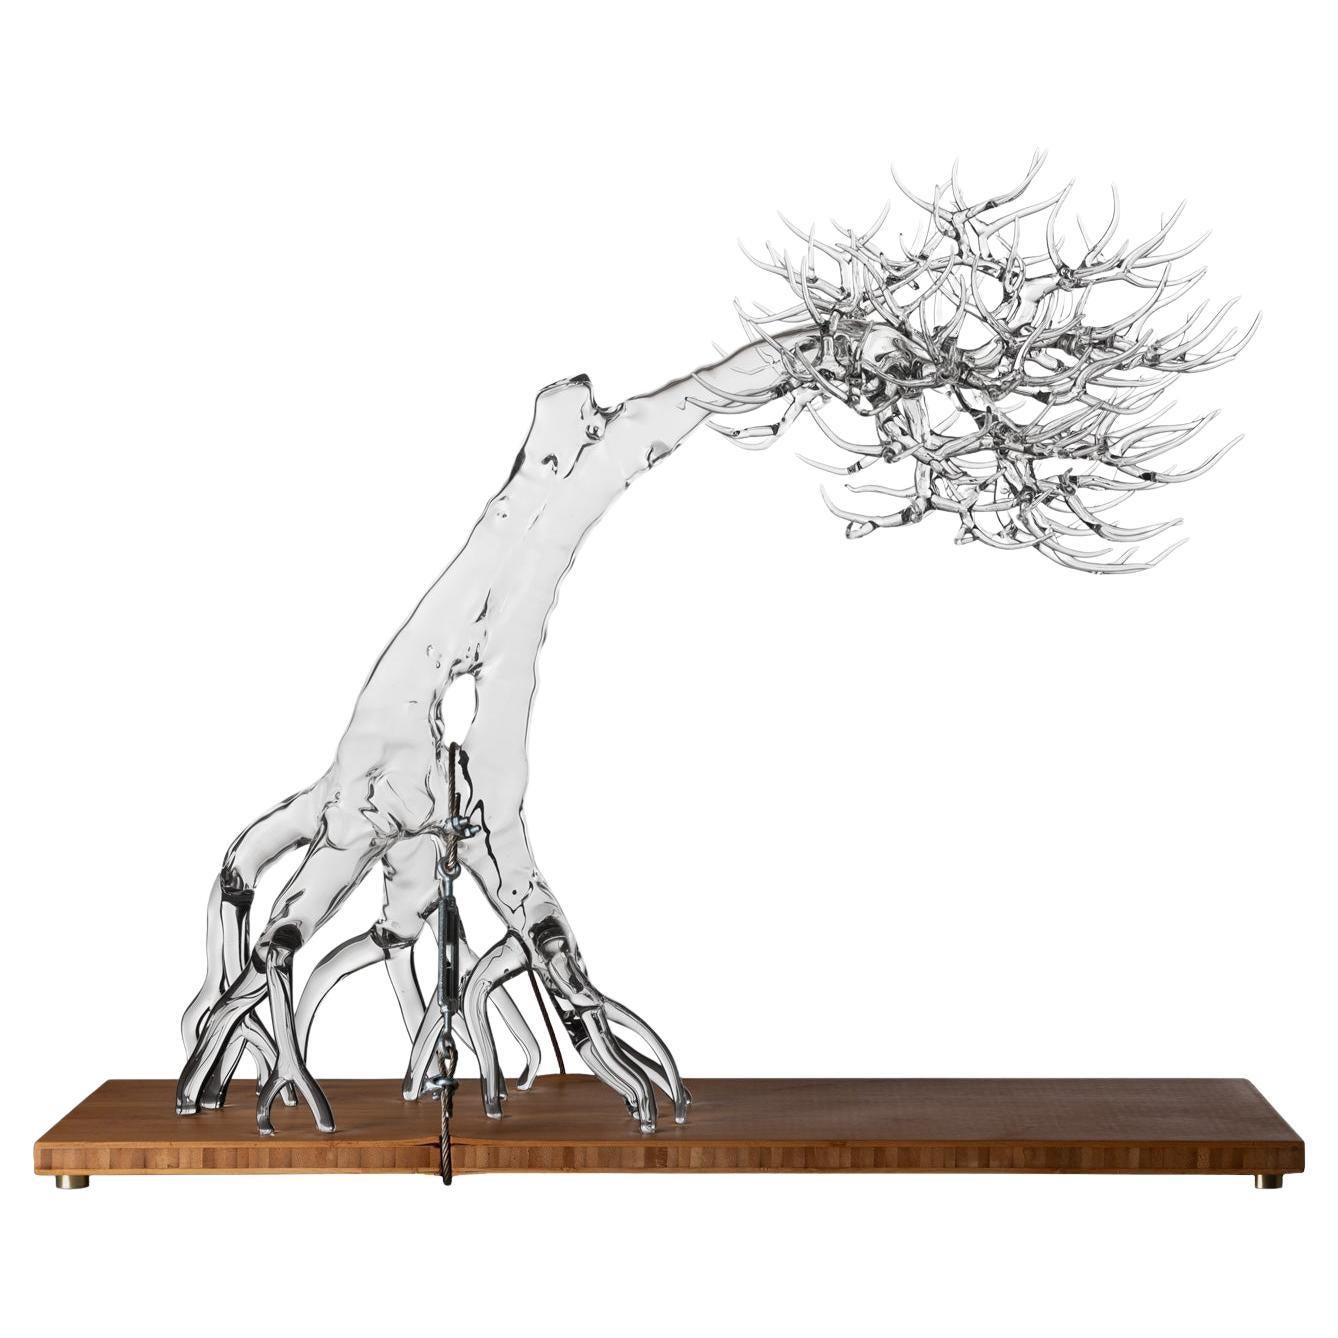 Hand Blown Glass Sculpture "Tensione Estetica #2021" by Simone Crestani